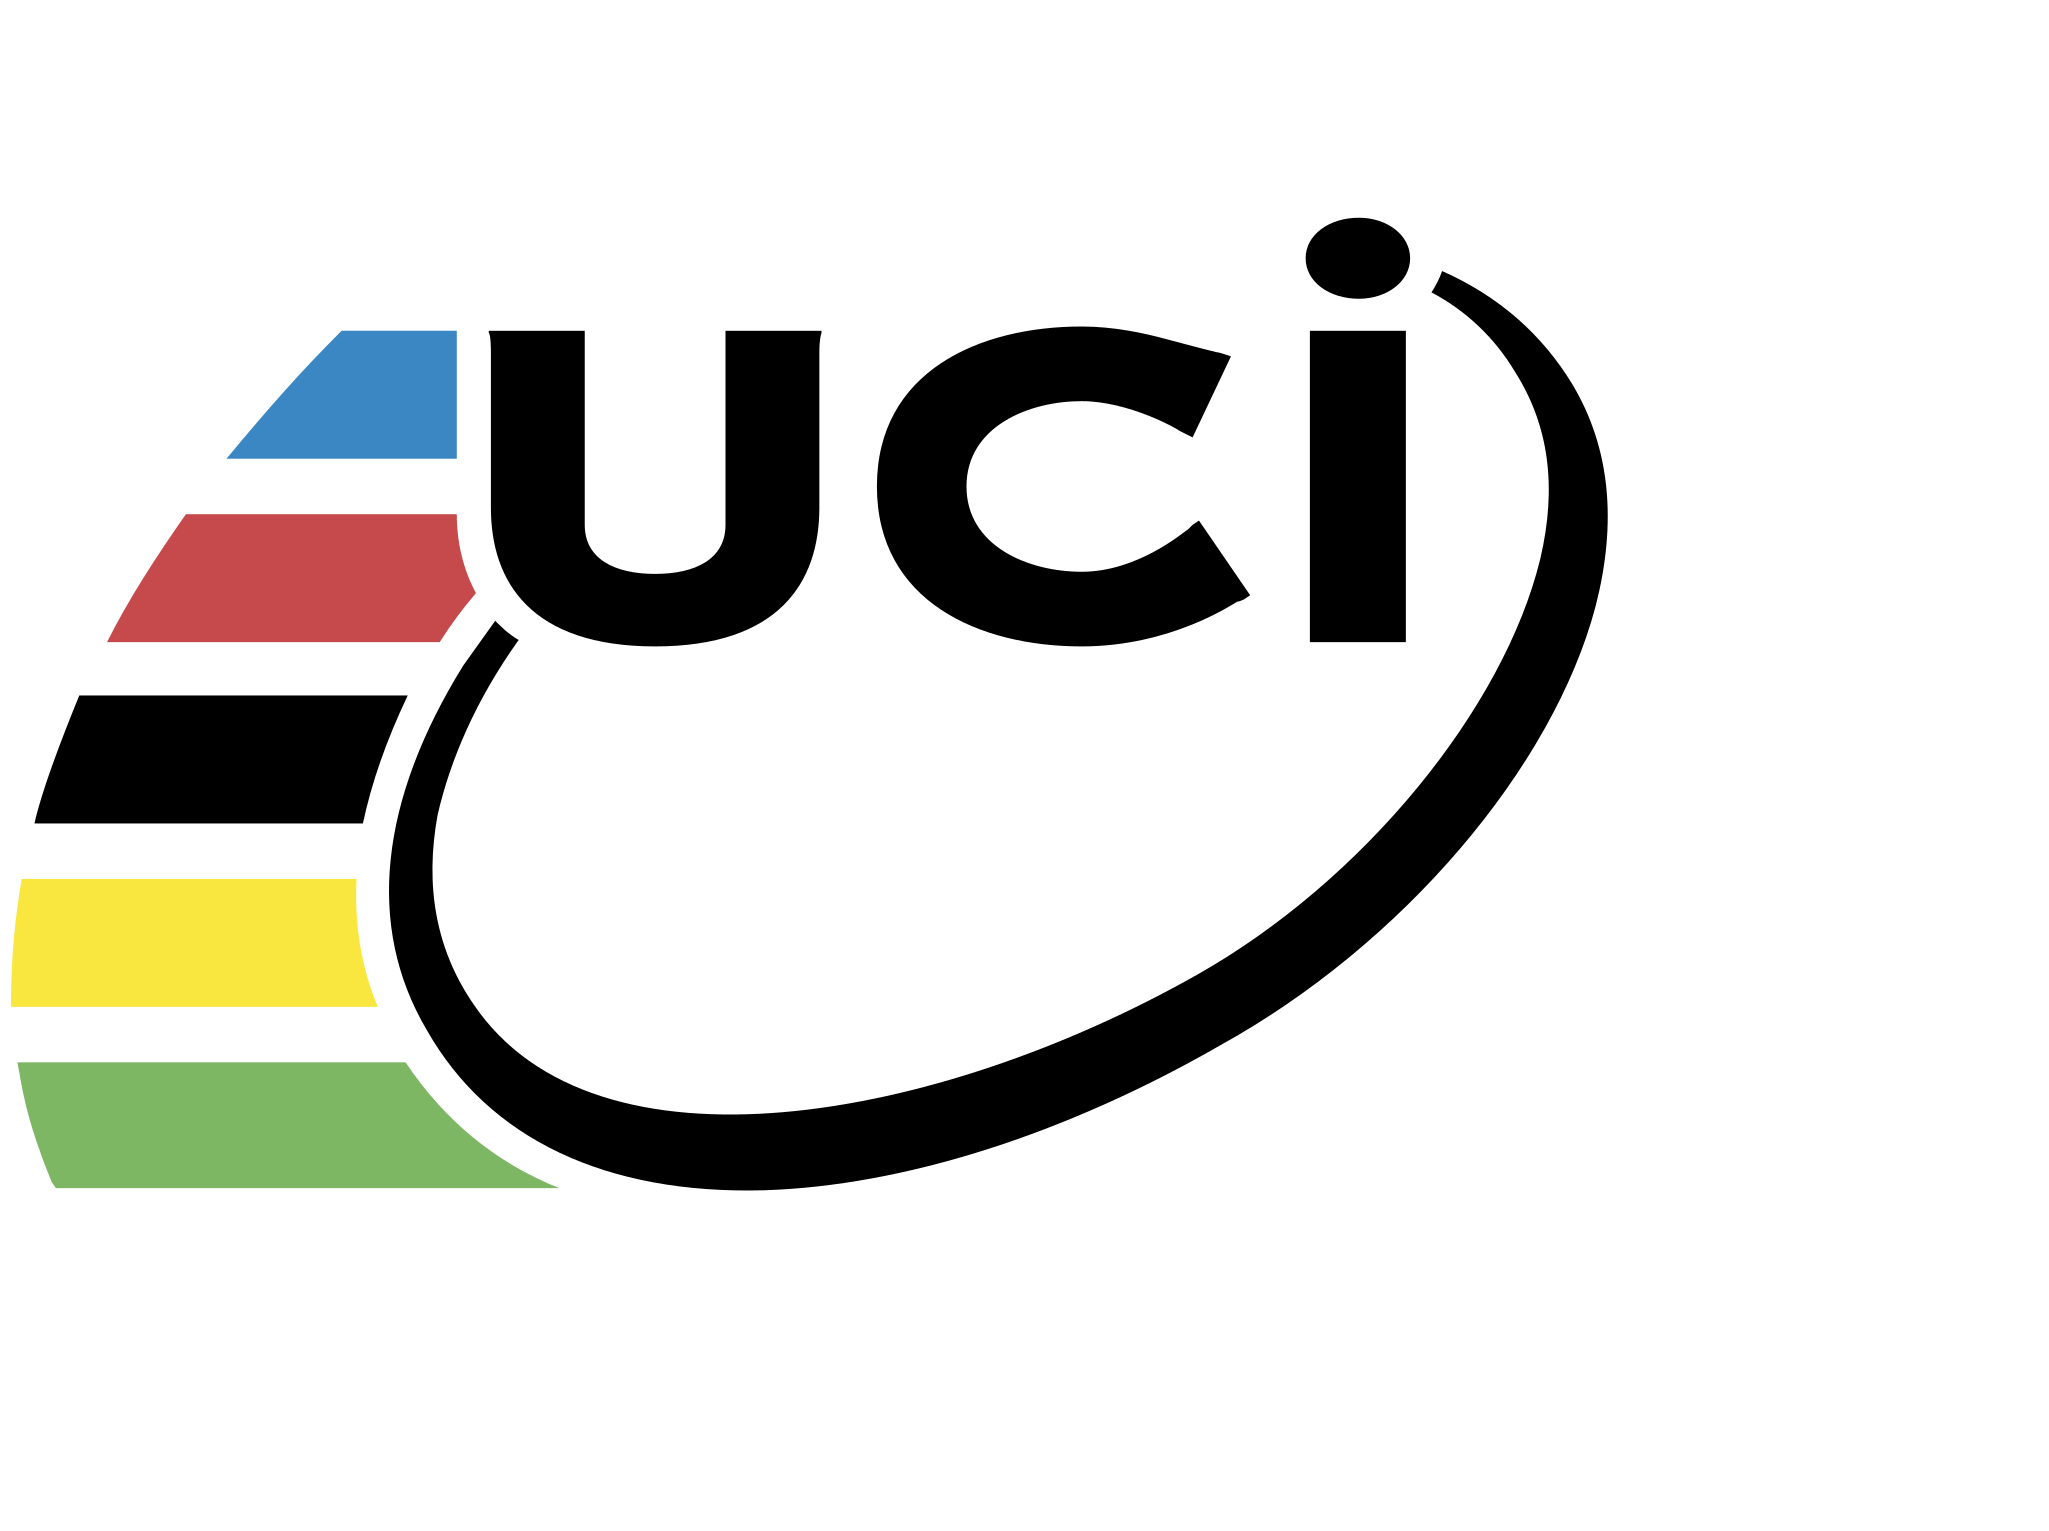 Uci Logo Black And White - Uci World Championship Logo (2400x2400)